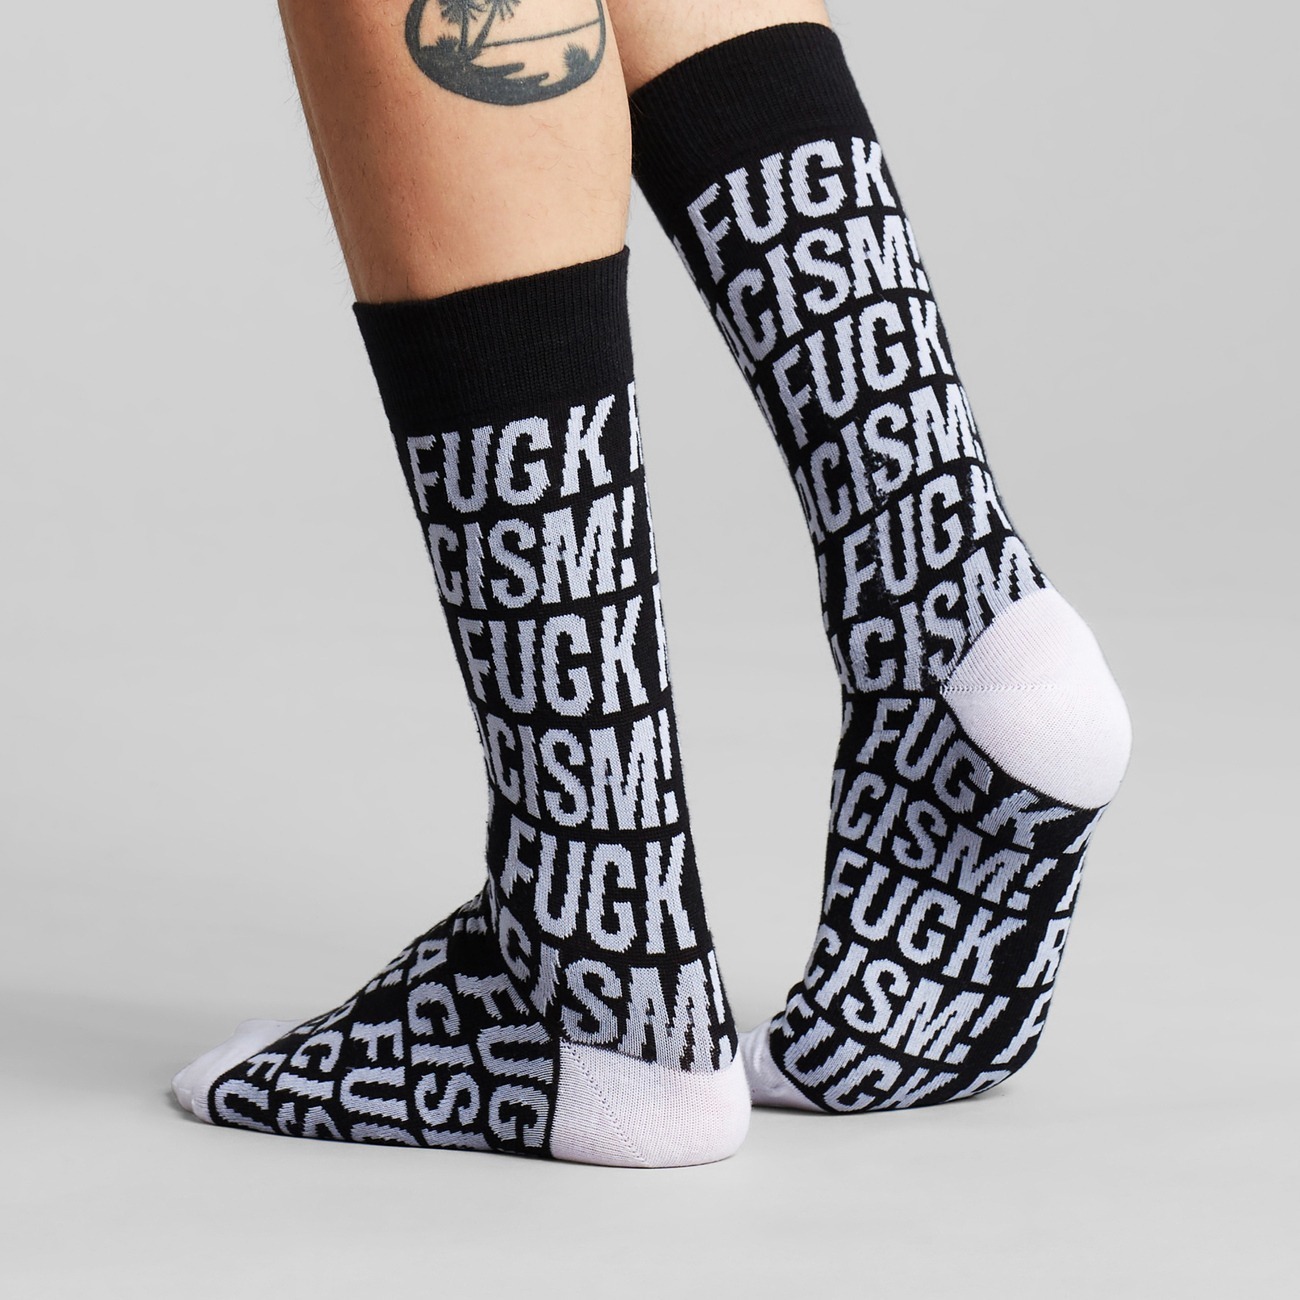 Socken mit Fuck Racism Slogan von Dedicated. Strümpfe aus Bio-Baumwolle in Schwarz mit weißem Muster.